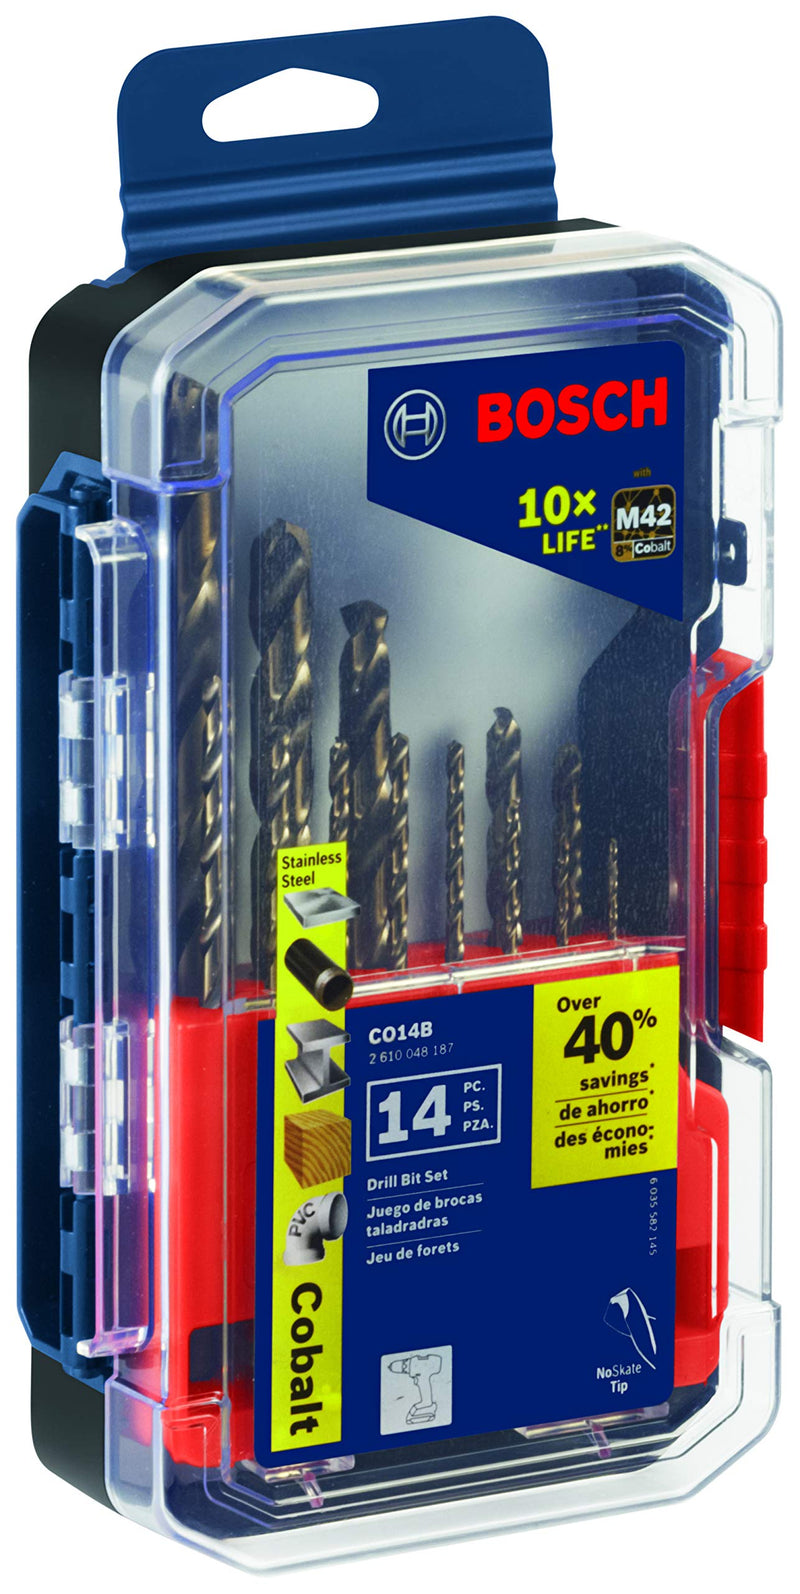 Bosch CO14B 14 Pc. Cobalt M42 Drill Bit Set 14 pc. Drill Bit Set - NewNest Australia